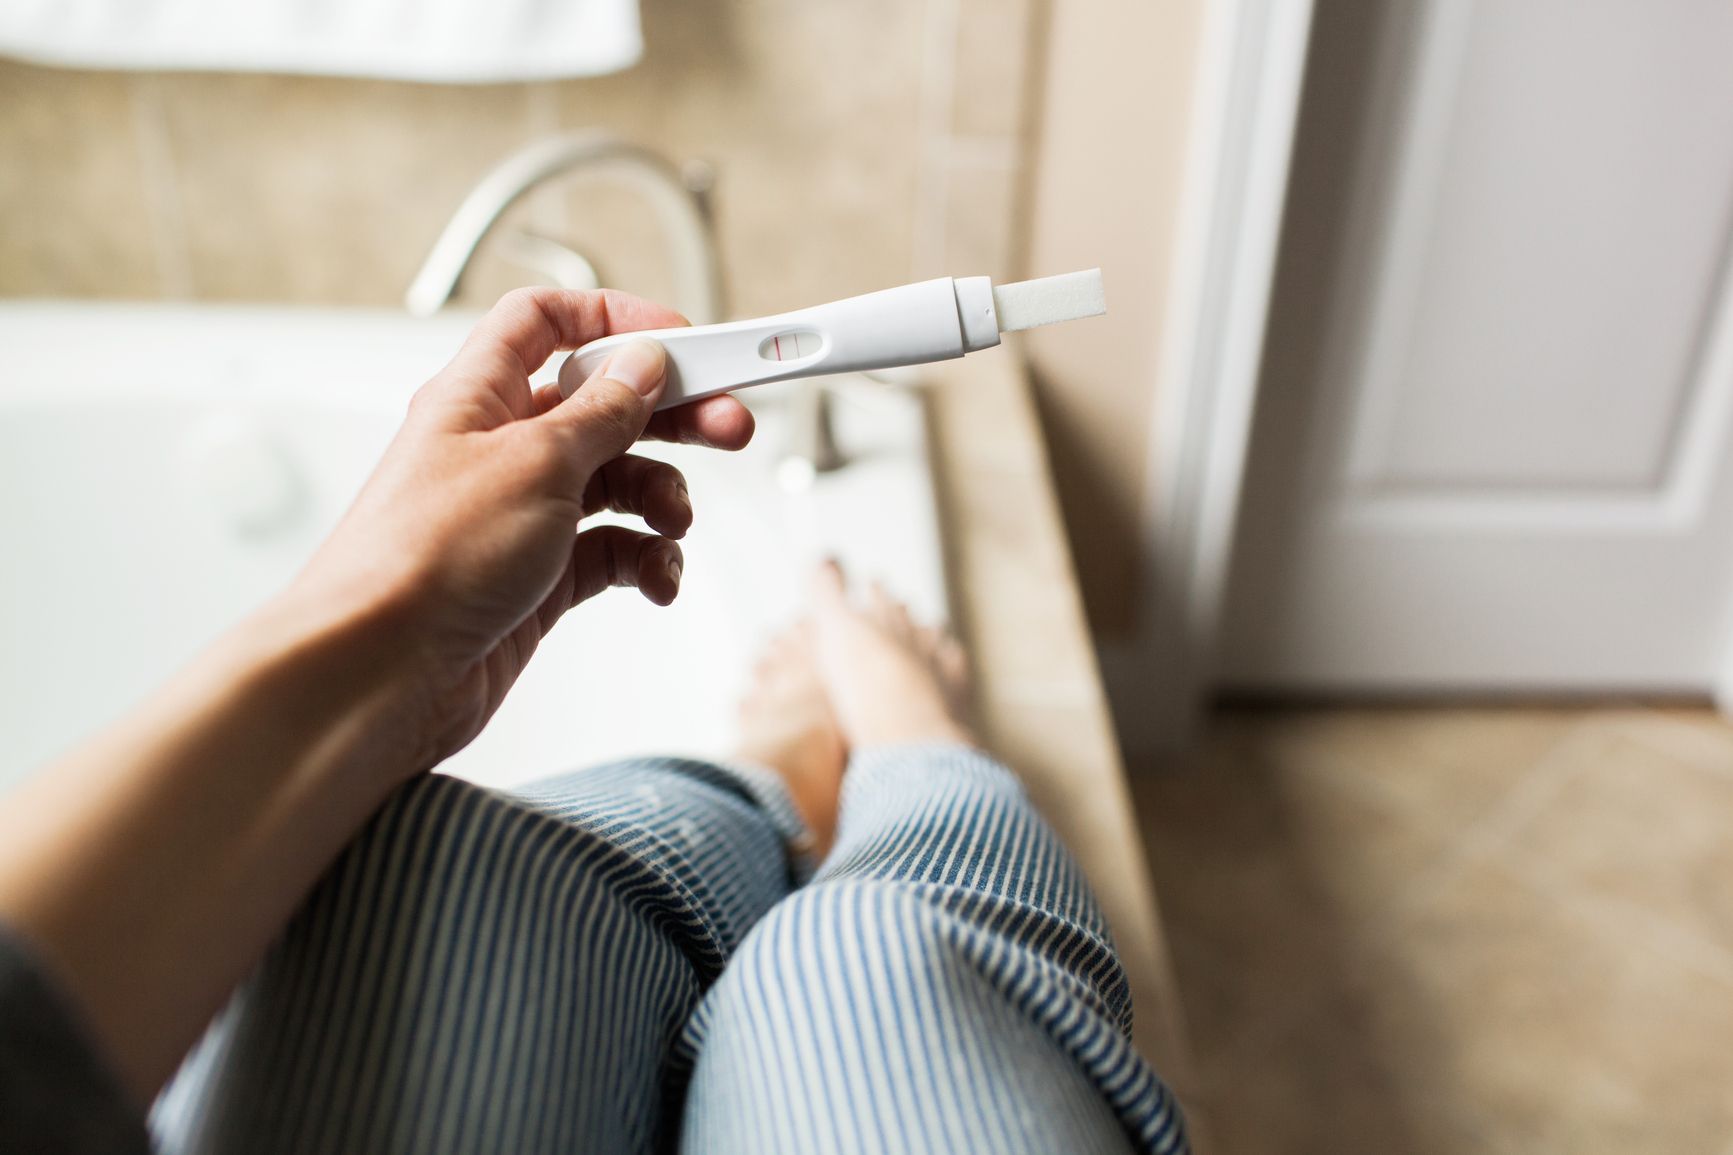 Một trong những cách sử dụng que thử thai để kết quả chính xác đó là lựa chọn thời điểm thích hợp.